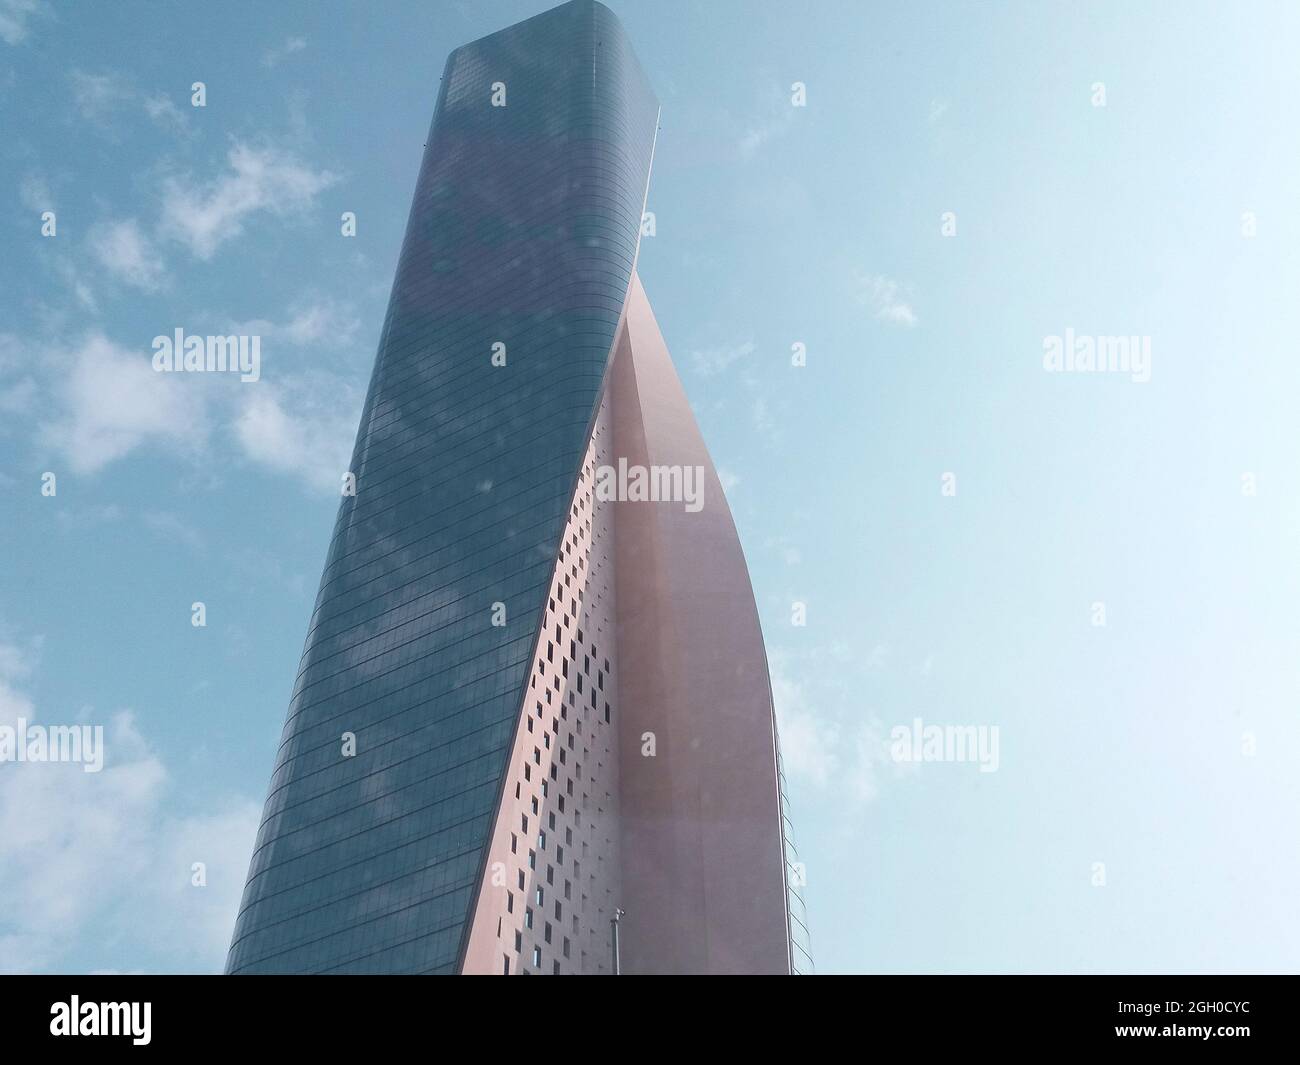 Vue magnifique du bâtiment le plus haut du Koweït, centre commercial Al Hamra. Gratte-ciel du Koweït. Banque D'Images